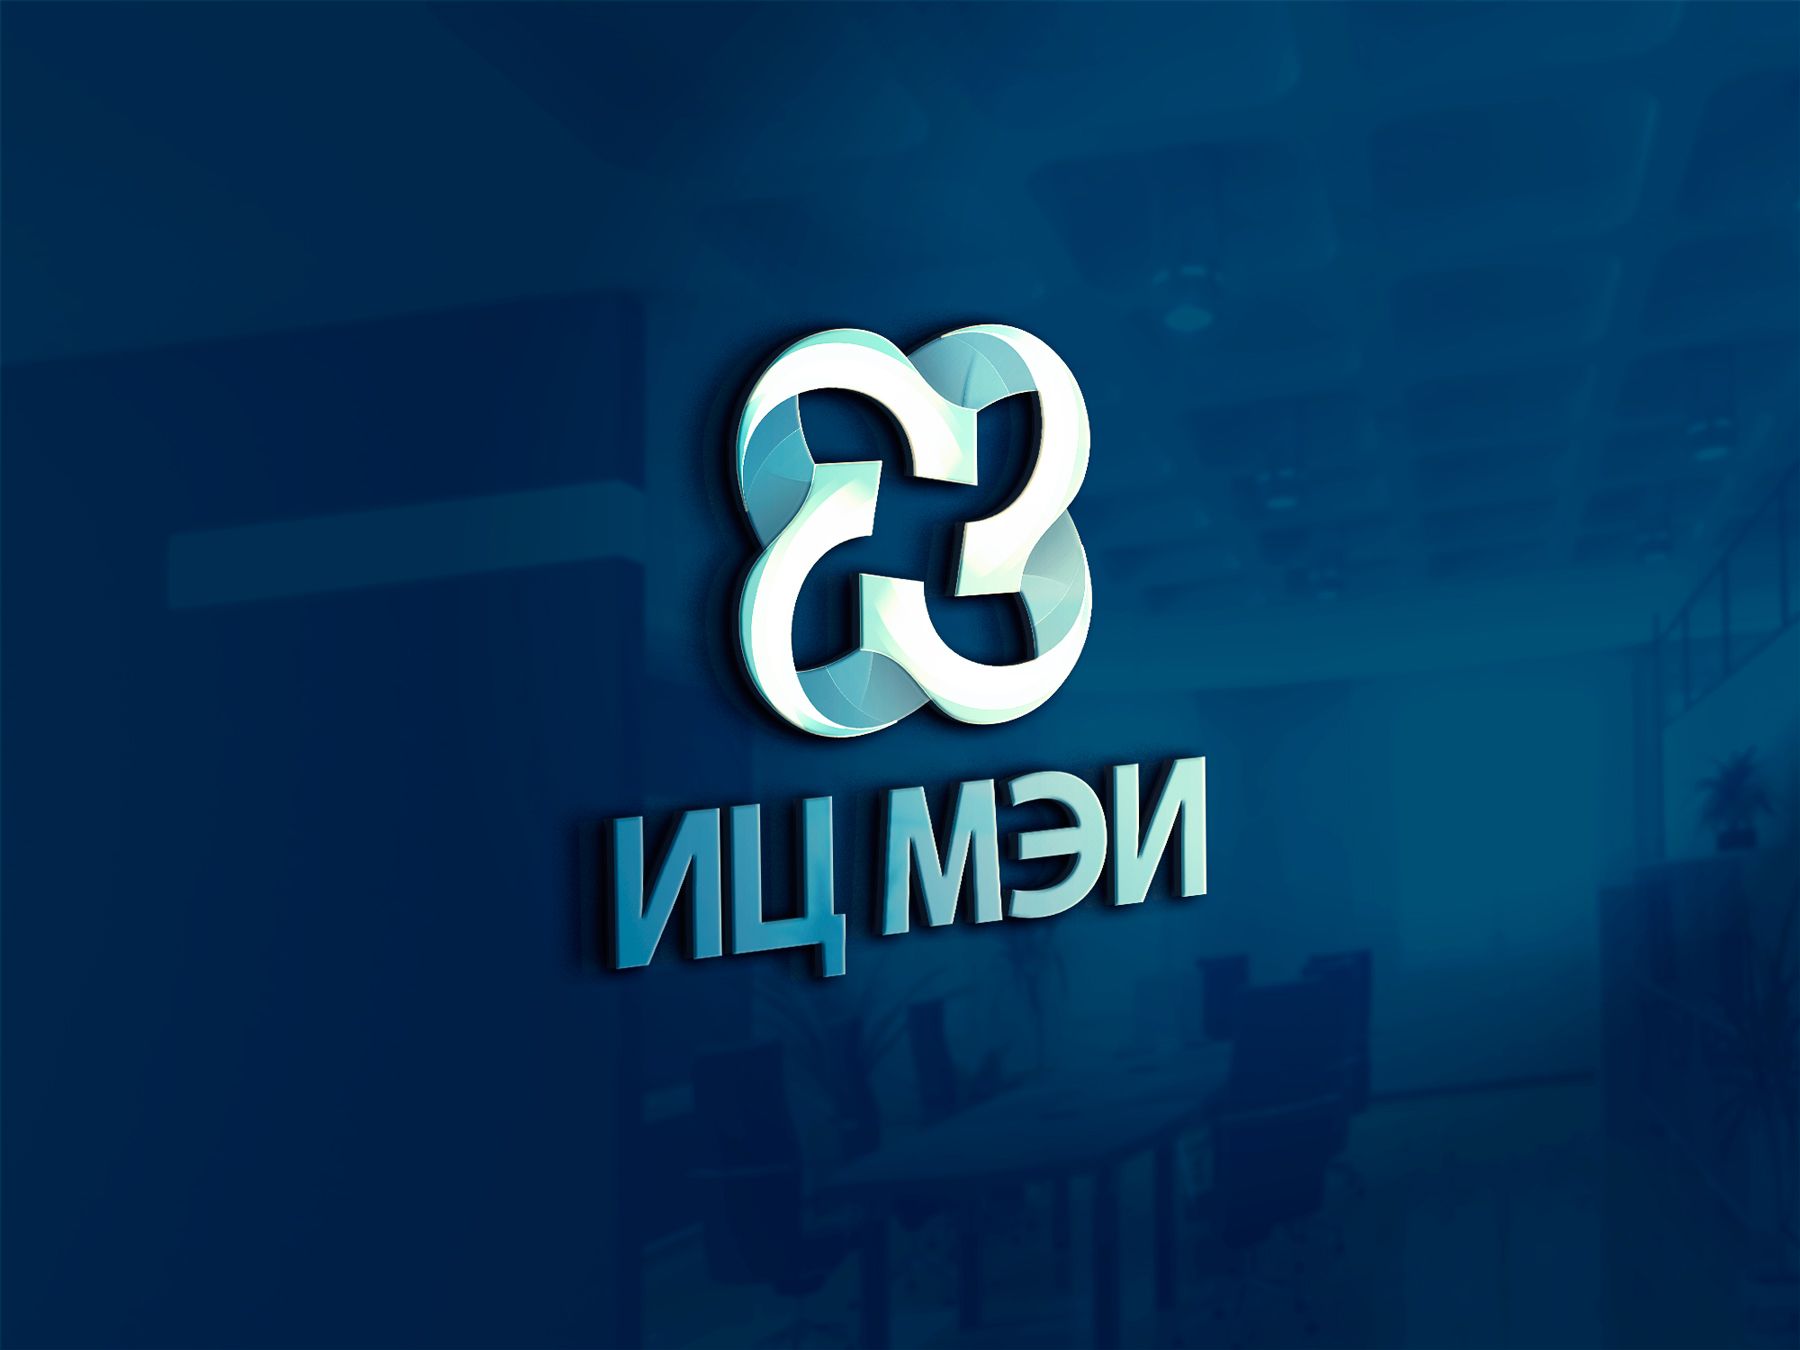 Логотип для ИЦ МЭИ / EC MEI (Инжиниринговый Центр МЭИ) - дизайнер Nodal